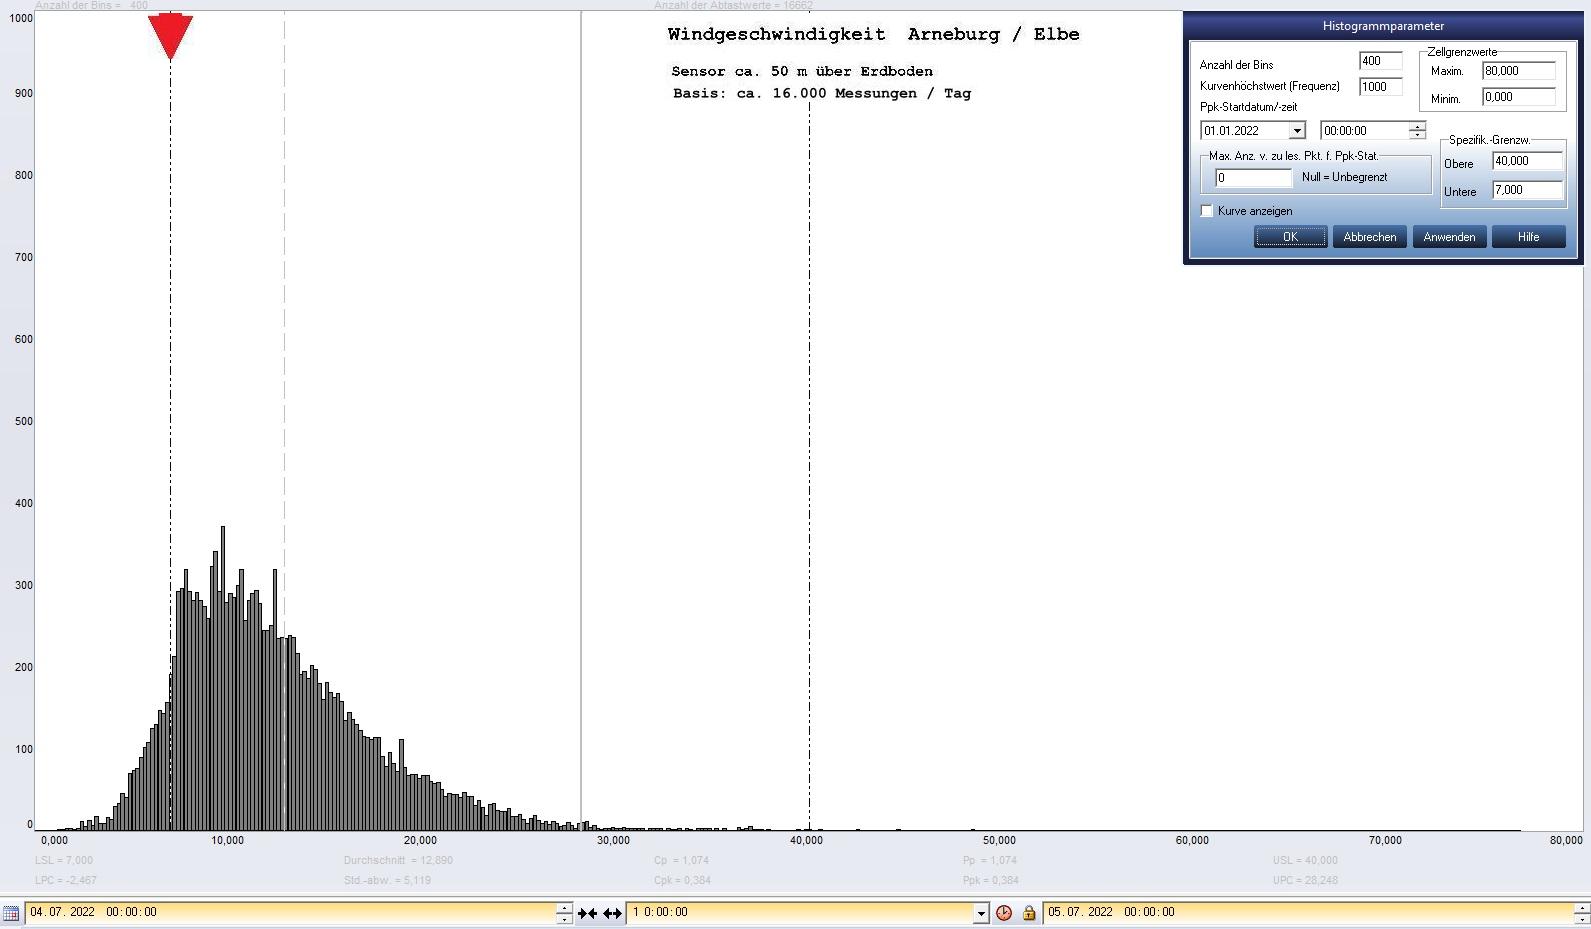 Arneburg Tages-Histogramm Winddaten, 04.07.2022
  Histogramm, Sensor auf Gebude, ca. 50 m ber Erdboden, Basis: 5s-Aufzeichnung